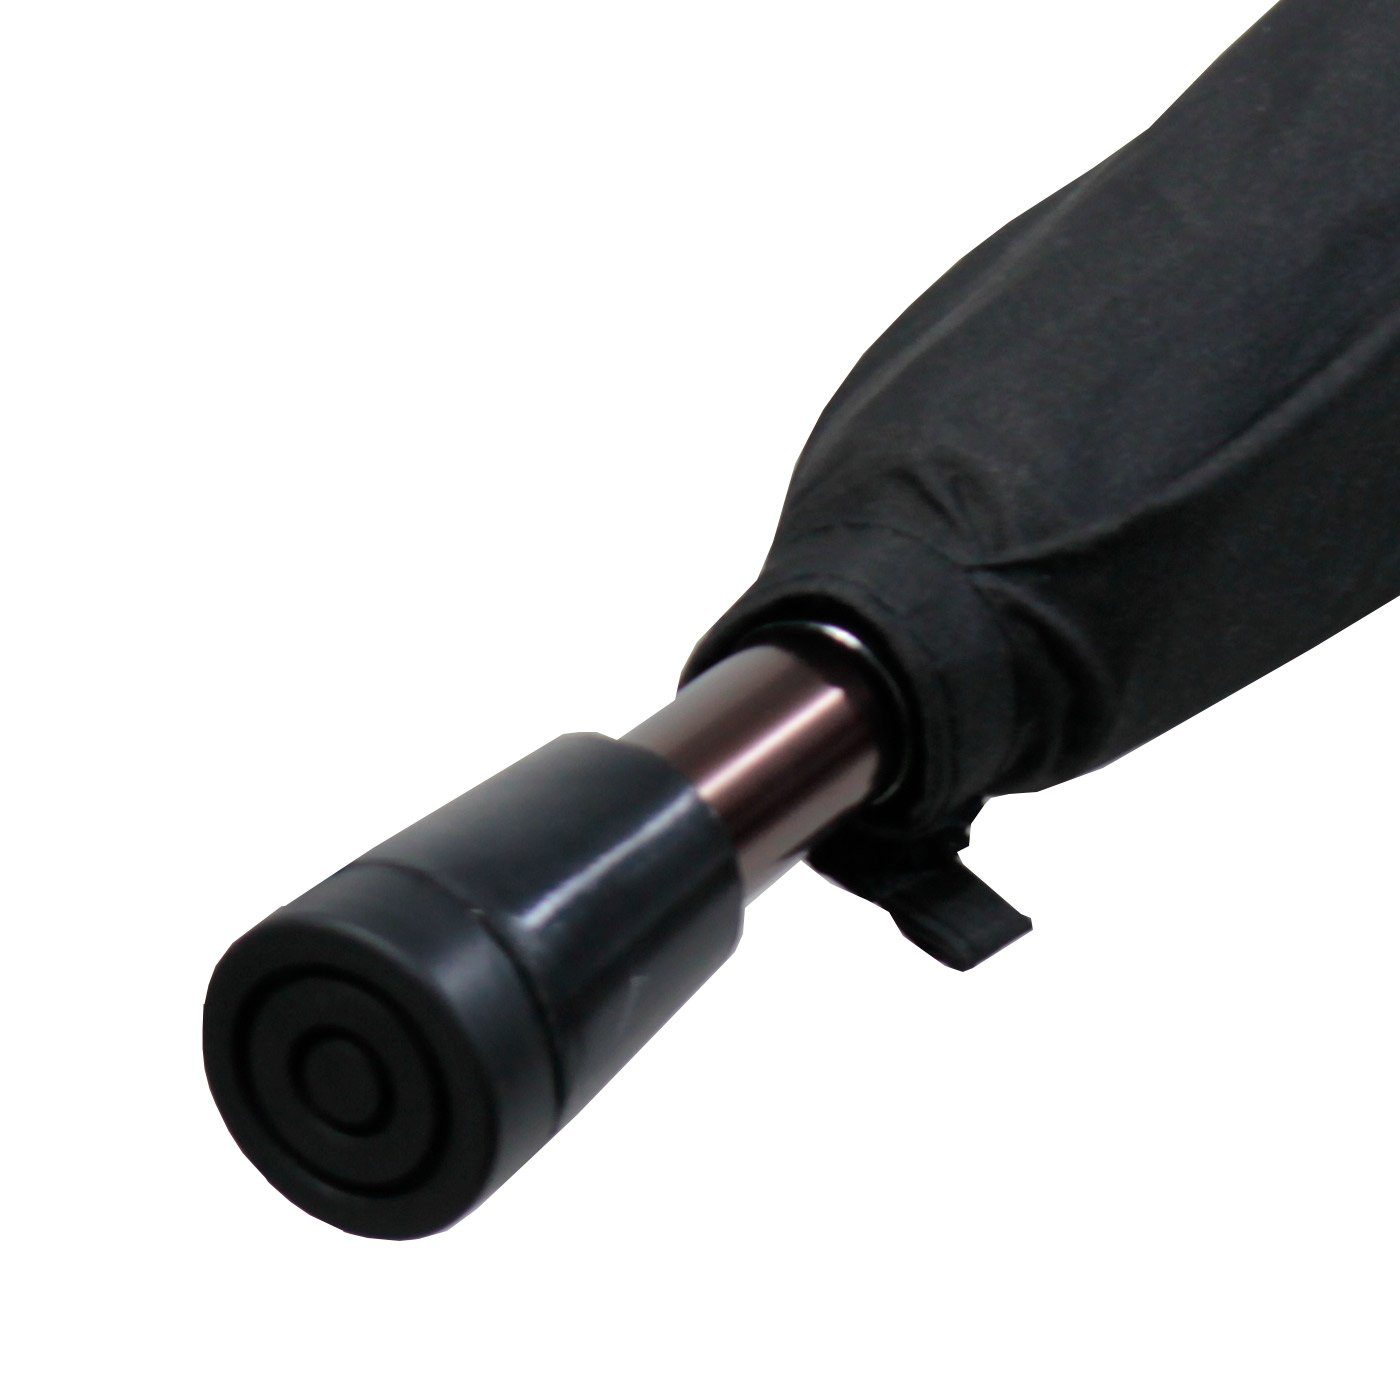 Langregenschirm schwarz höhenverstellbar sehr stabil, Stützschirm extrem-stabil Holzgriff iX-brella